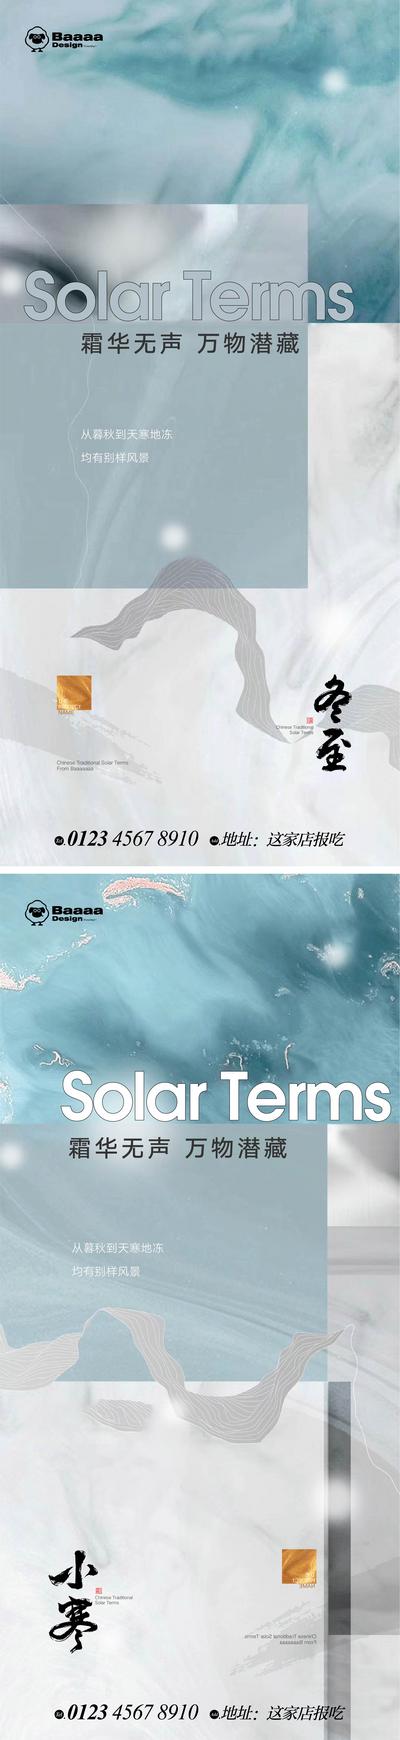 南门网 广告 节气 中式 冬至 小寒 传统节日 新中式 排版 书法 大气 刷屏 微信